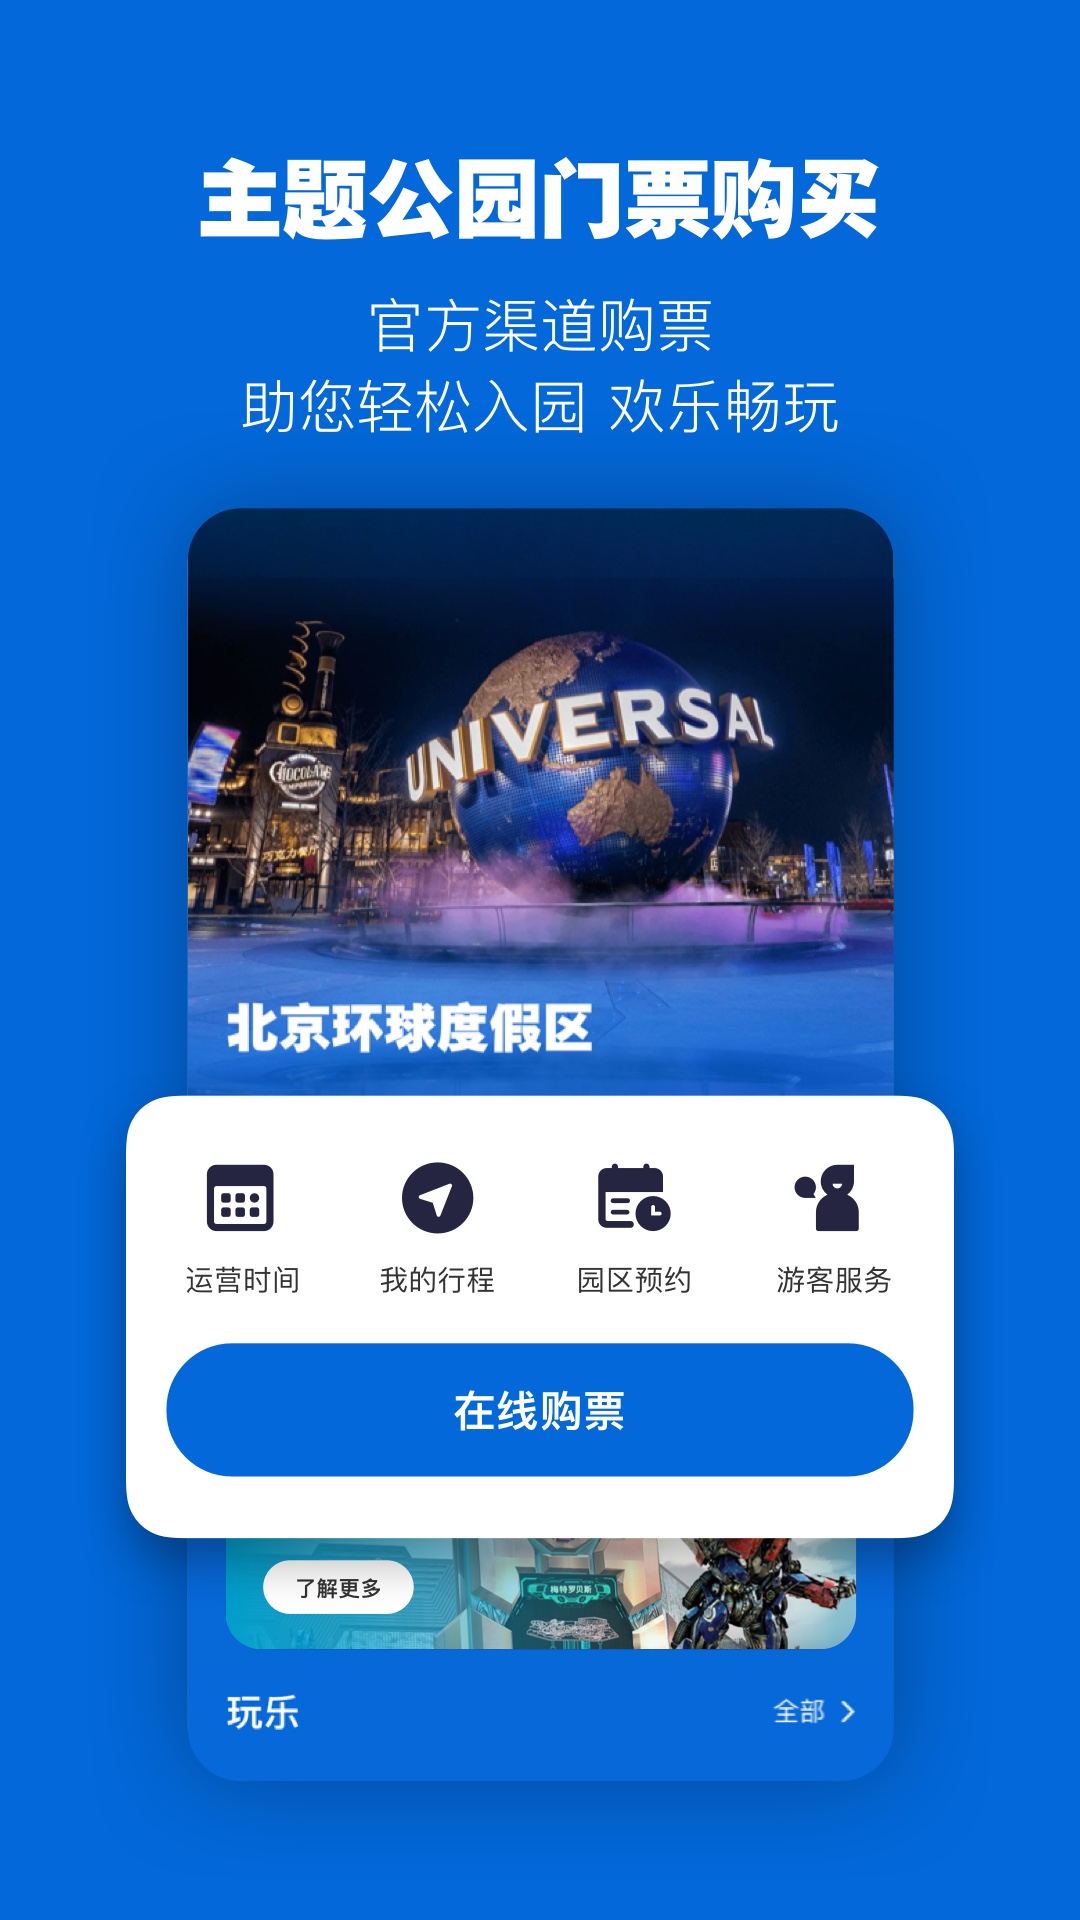 北京环球度假区v3.0.1截图5